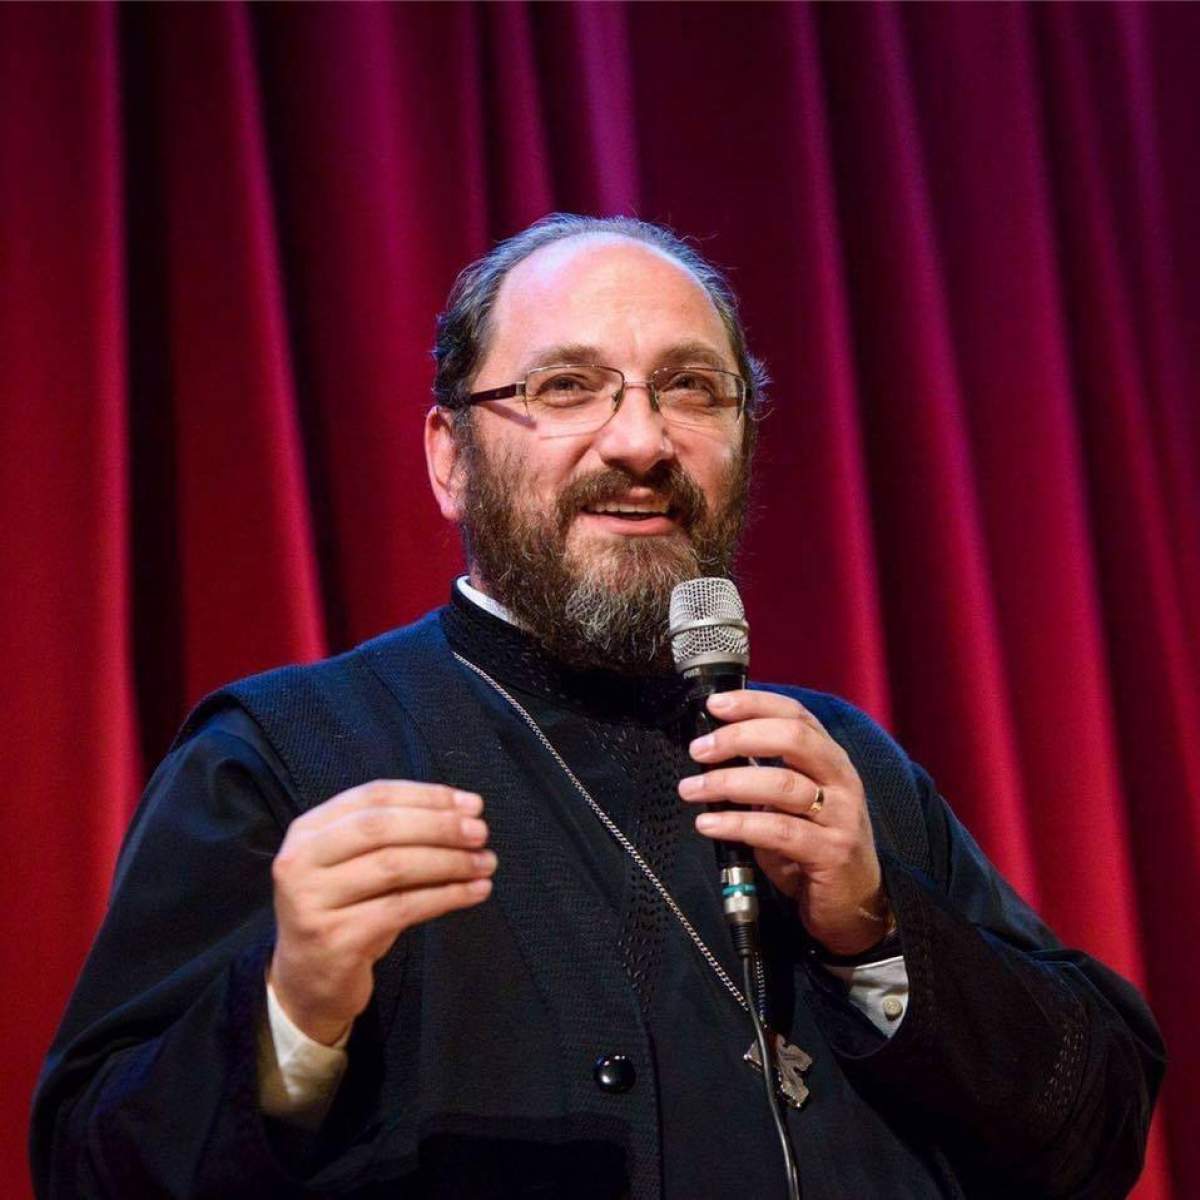 Părintele Constantin Necula anunță ce trebuie să facă preoții la prima slujbă după starea de urgență